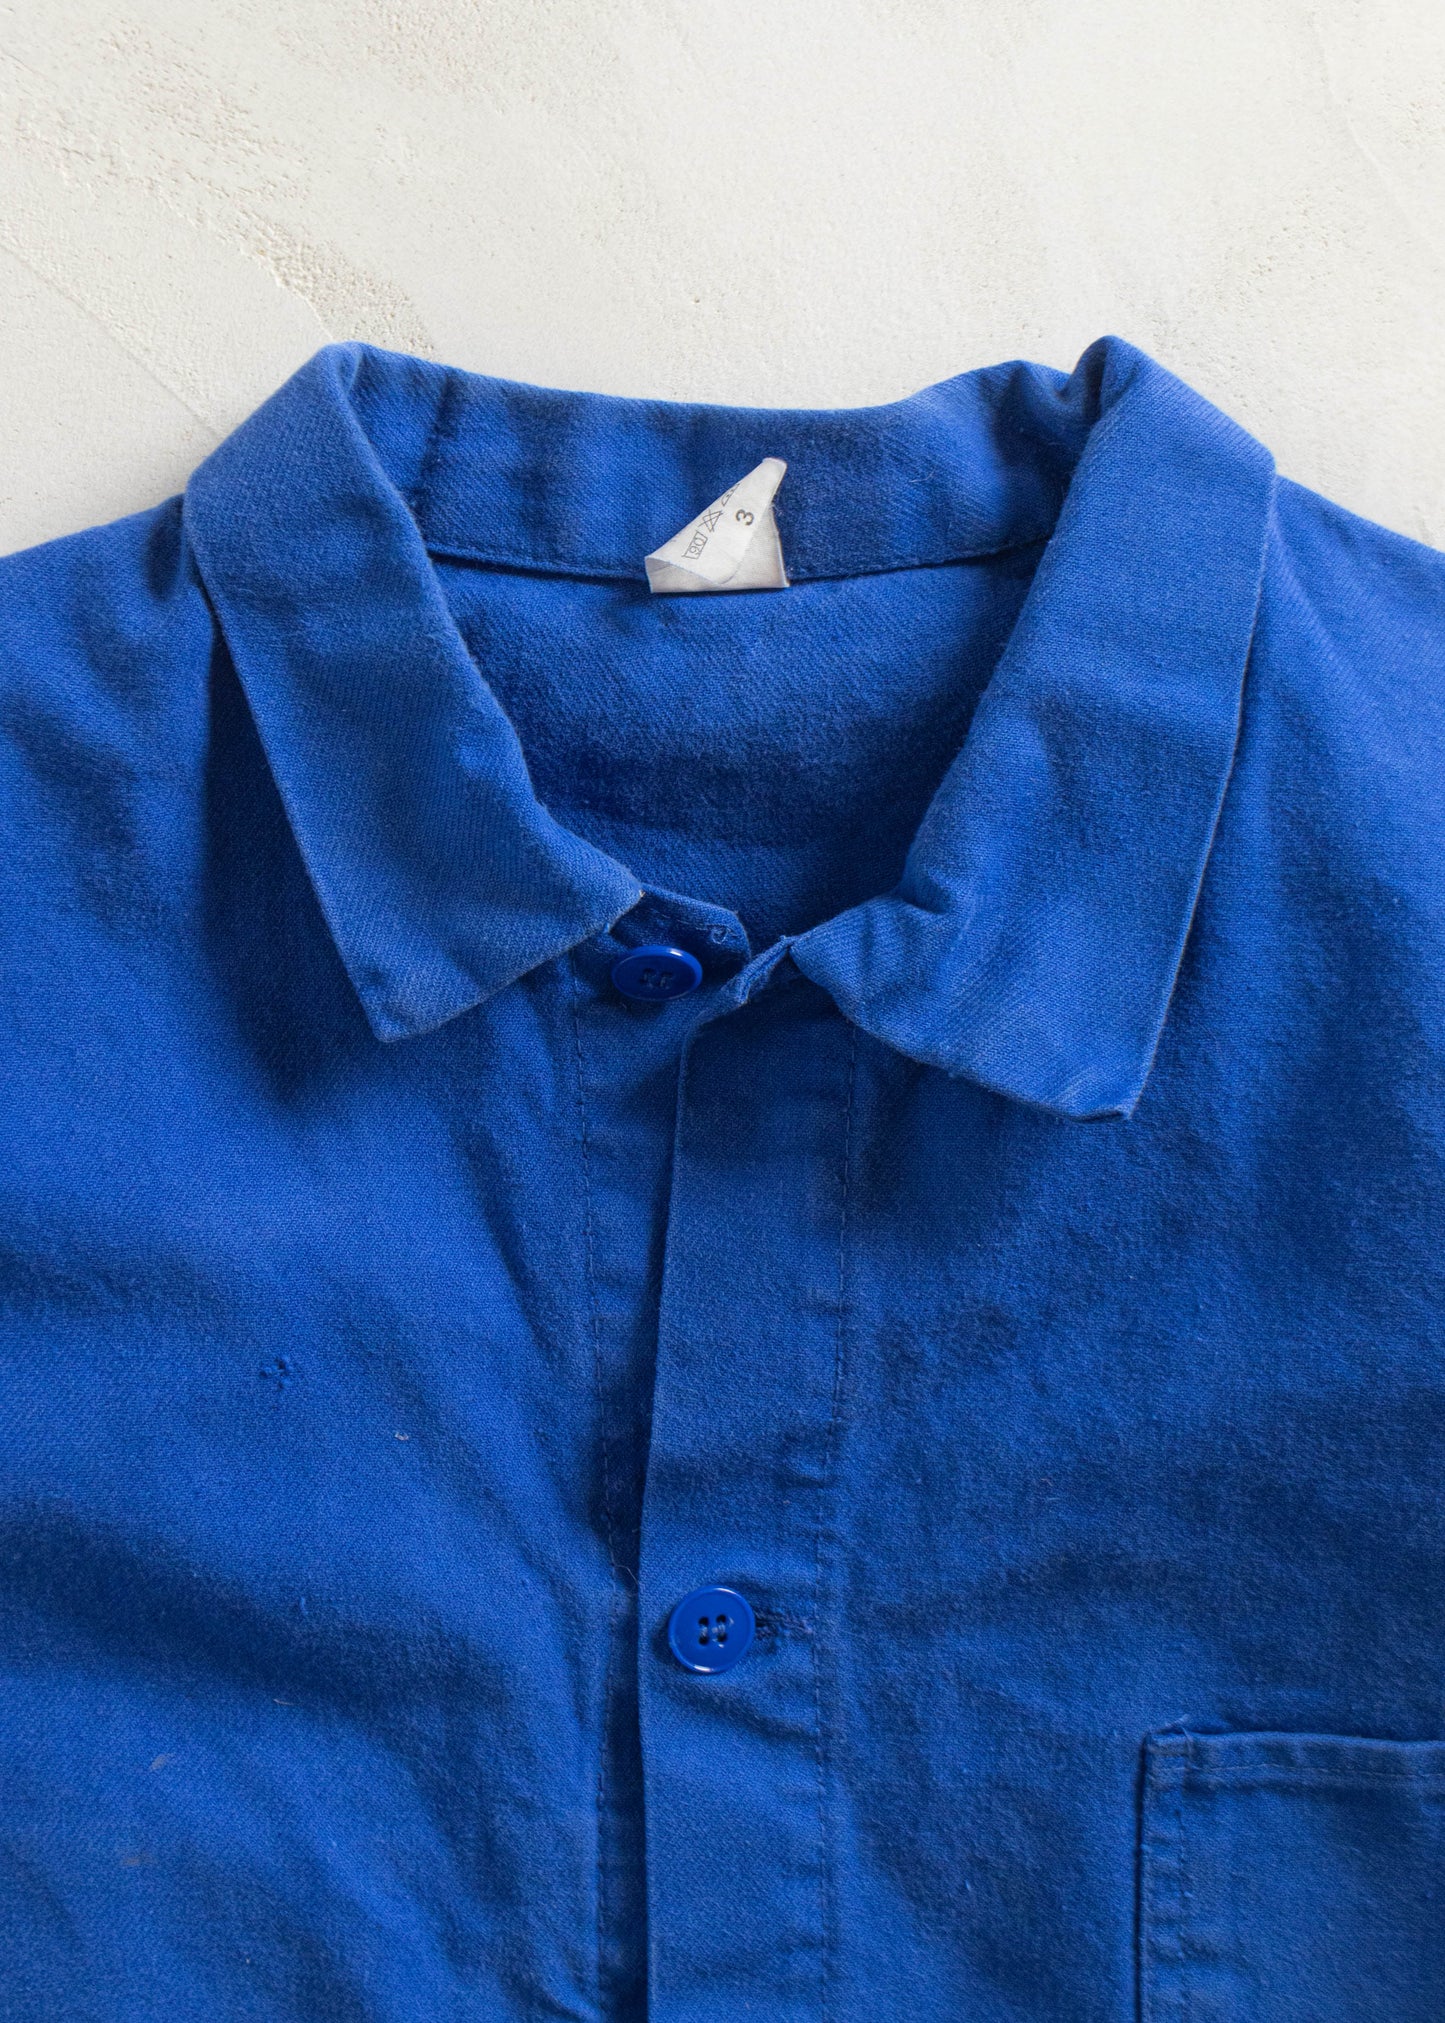 Vintage 1980s HVS Bleu de Travail Workwear Chore Jacket Size M/L